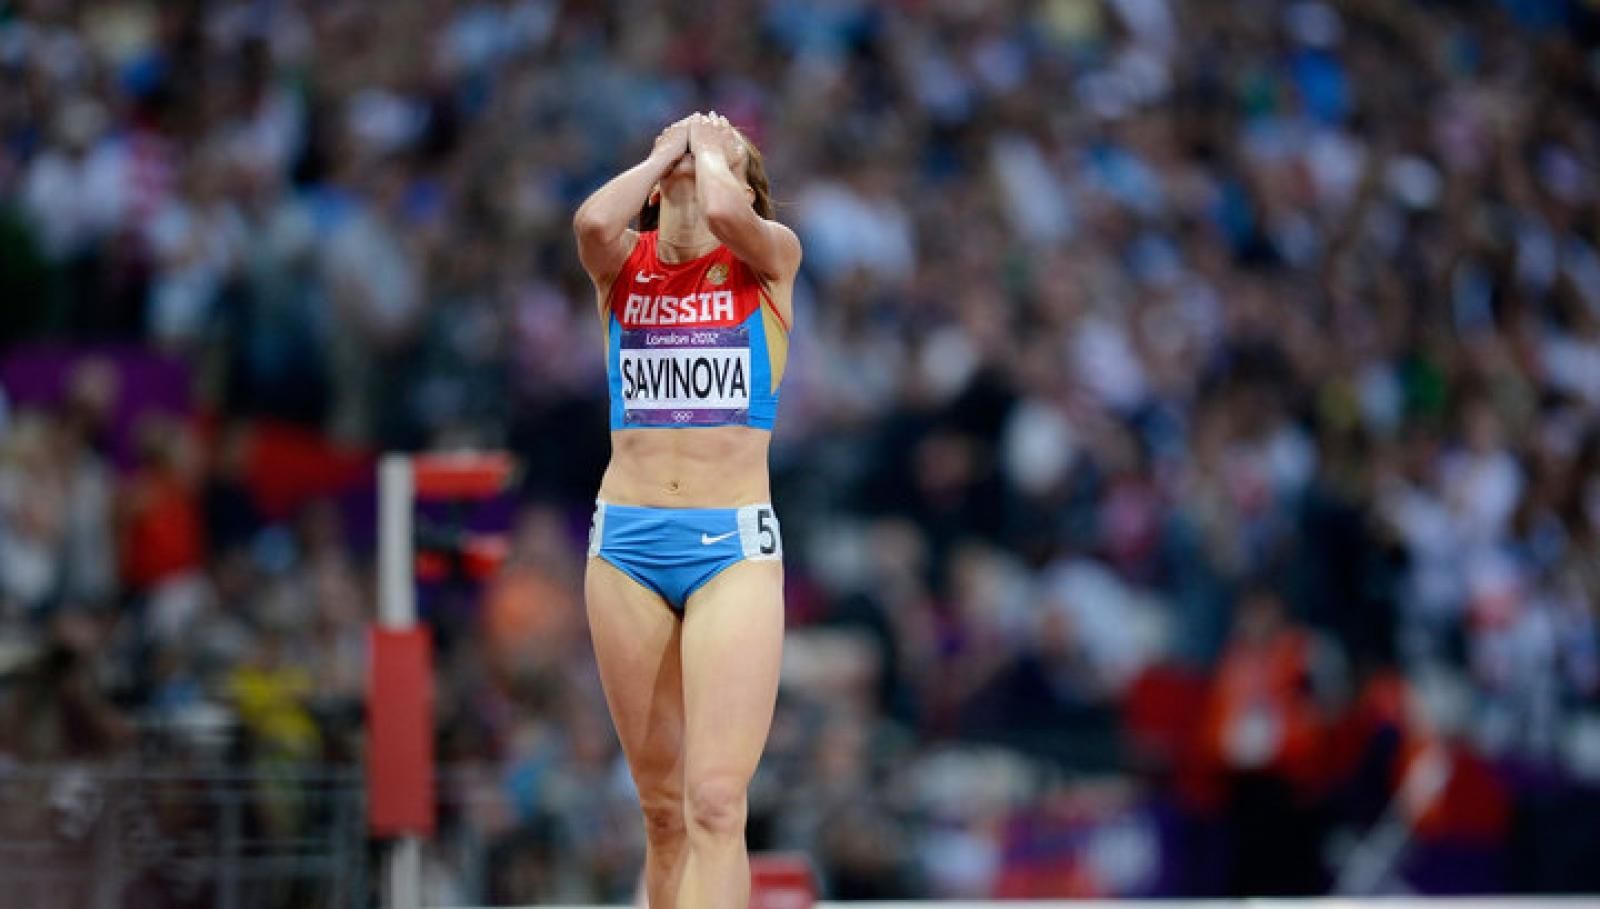 Російські легкоатлети зможуть виступати на Олімпіаді - що відомо